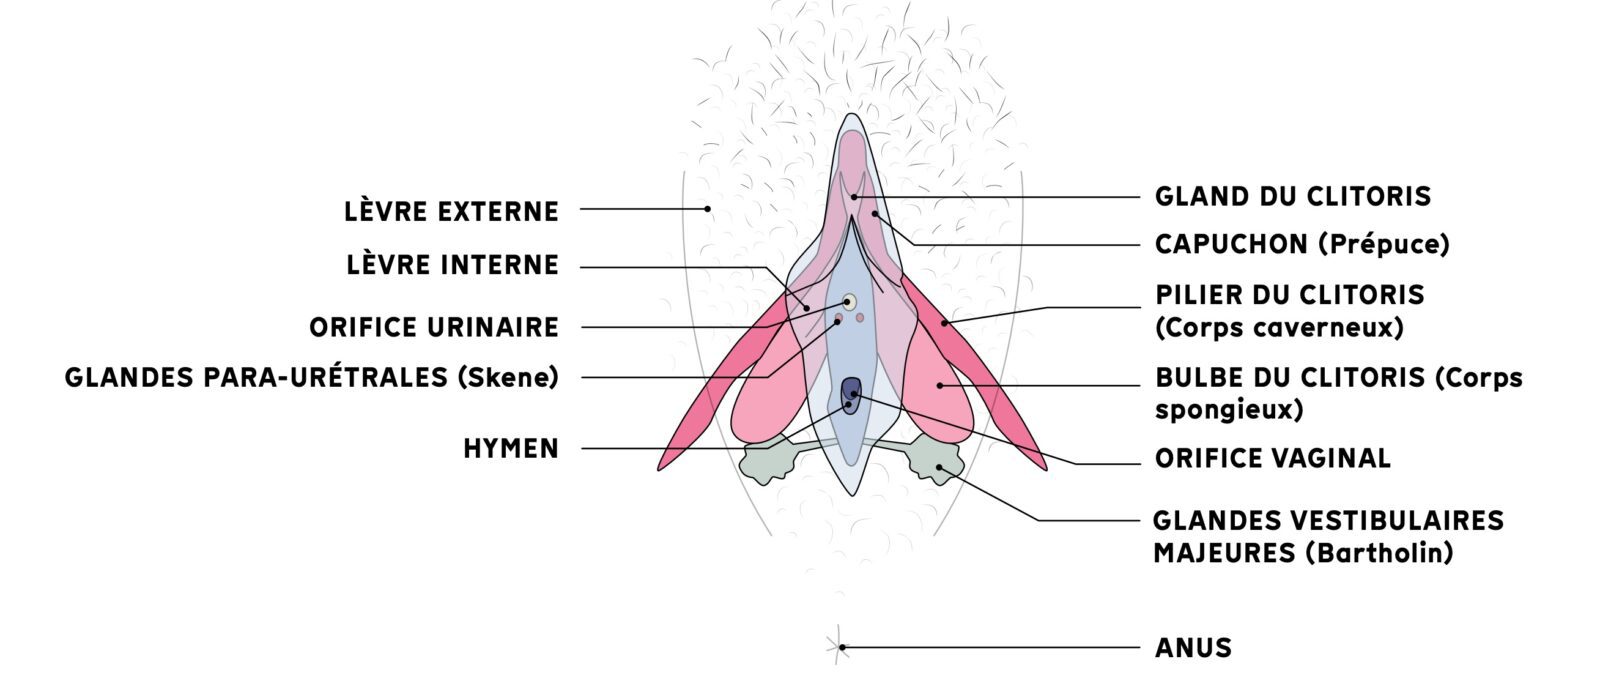 Schéma anatomique du Clitoris (vue de face)